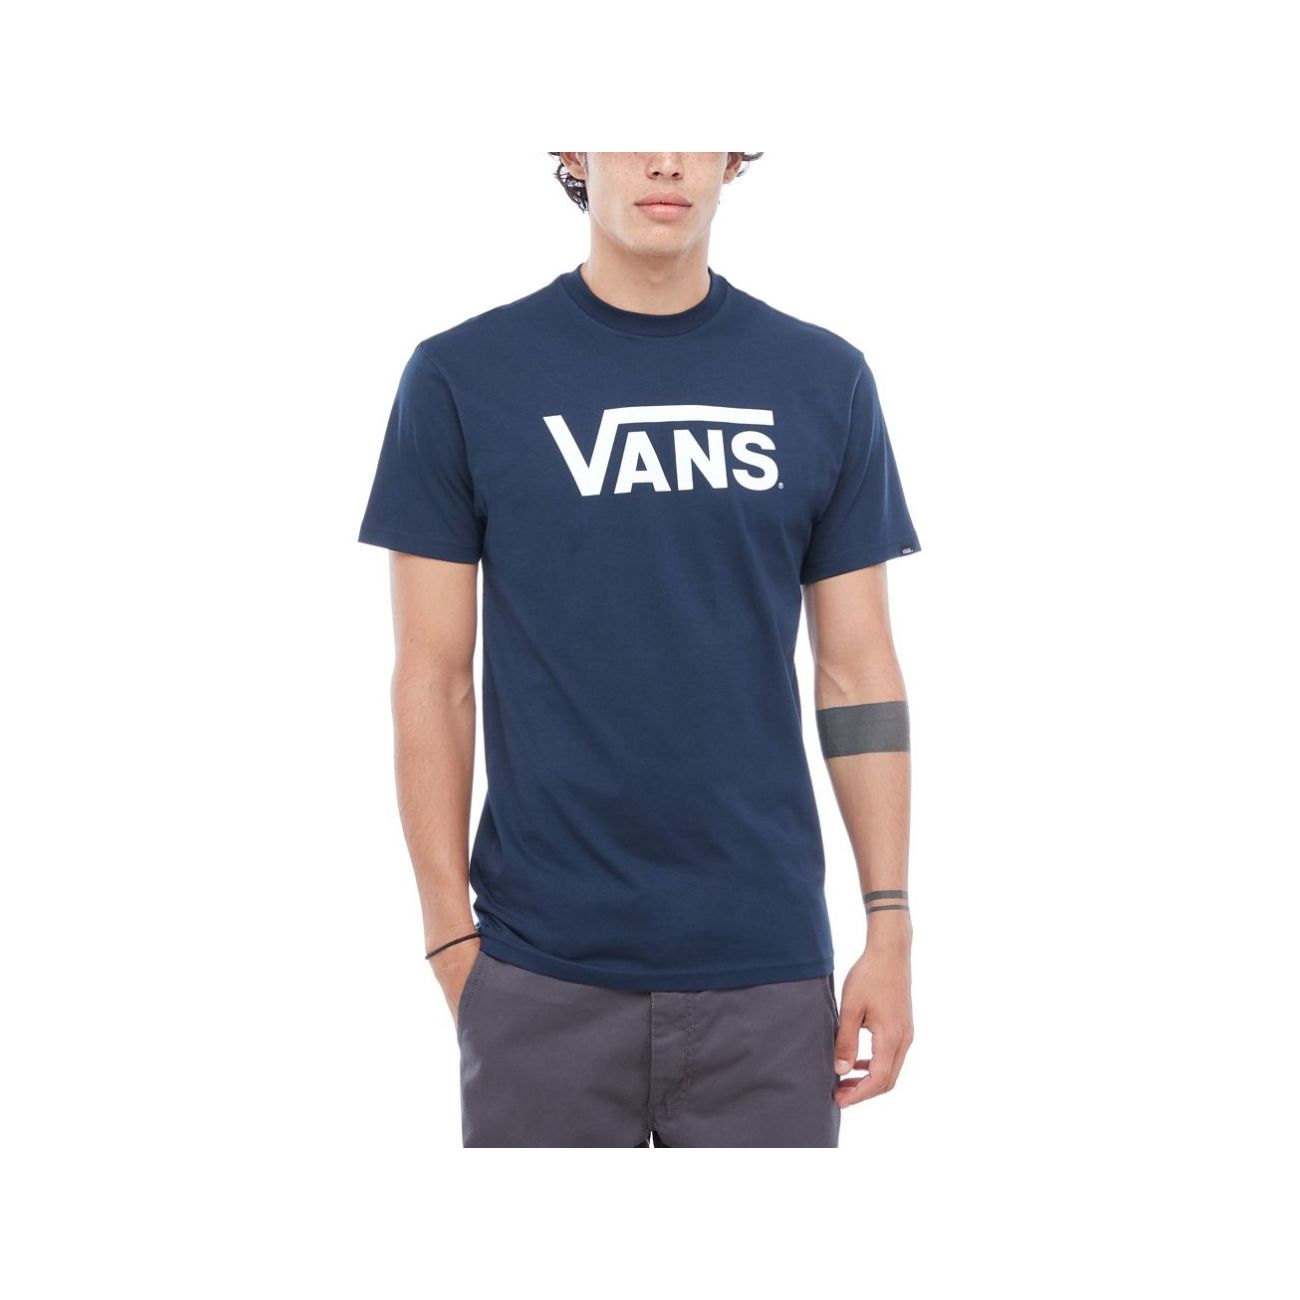 navy blue vans shirt